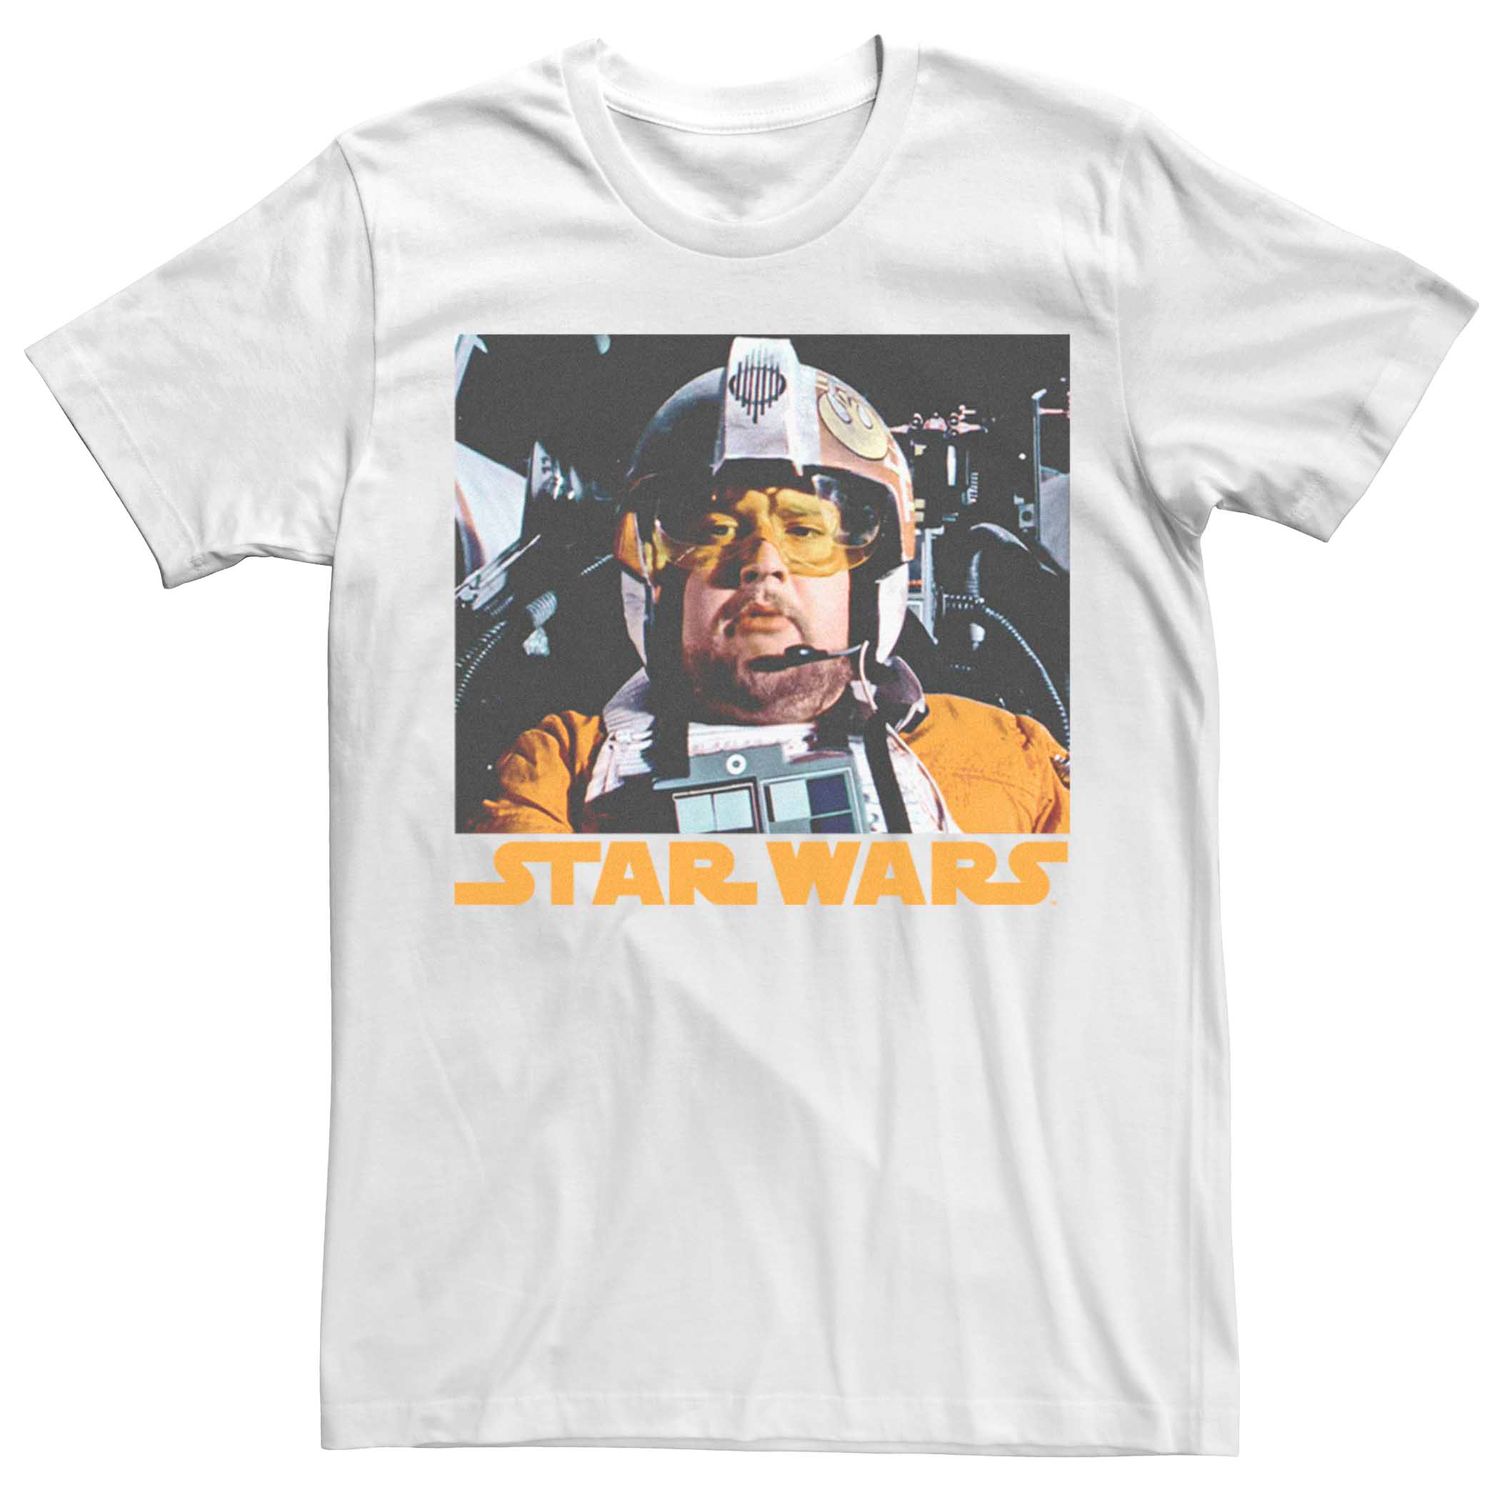 Мужская футболка с плакатом «Звездные войны» Licensed Character